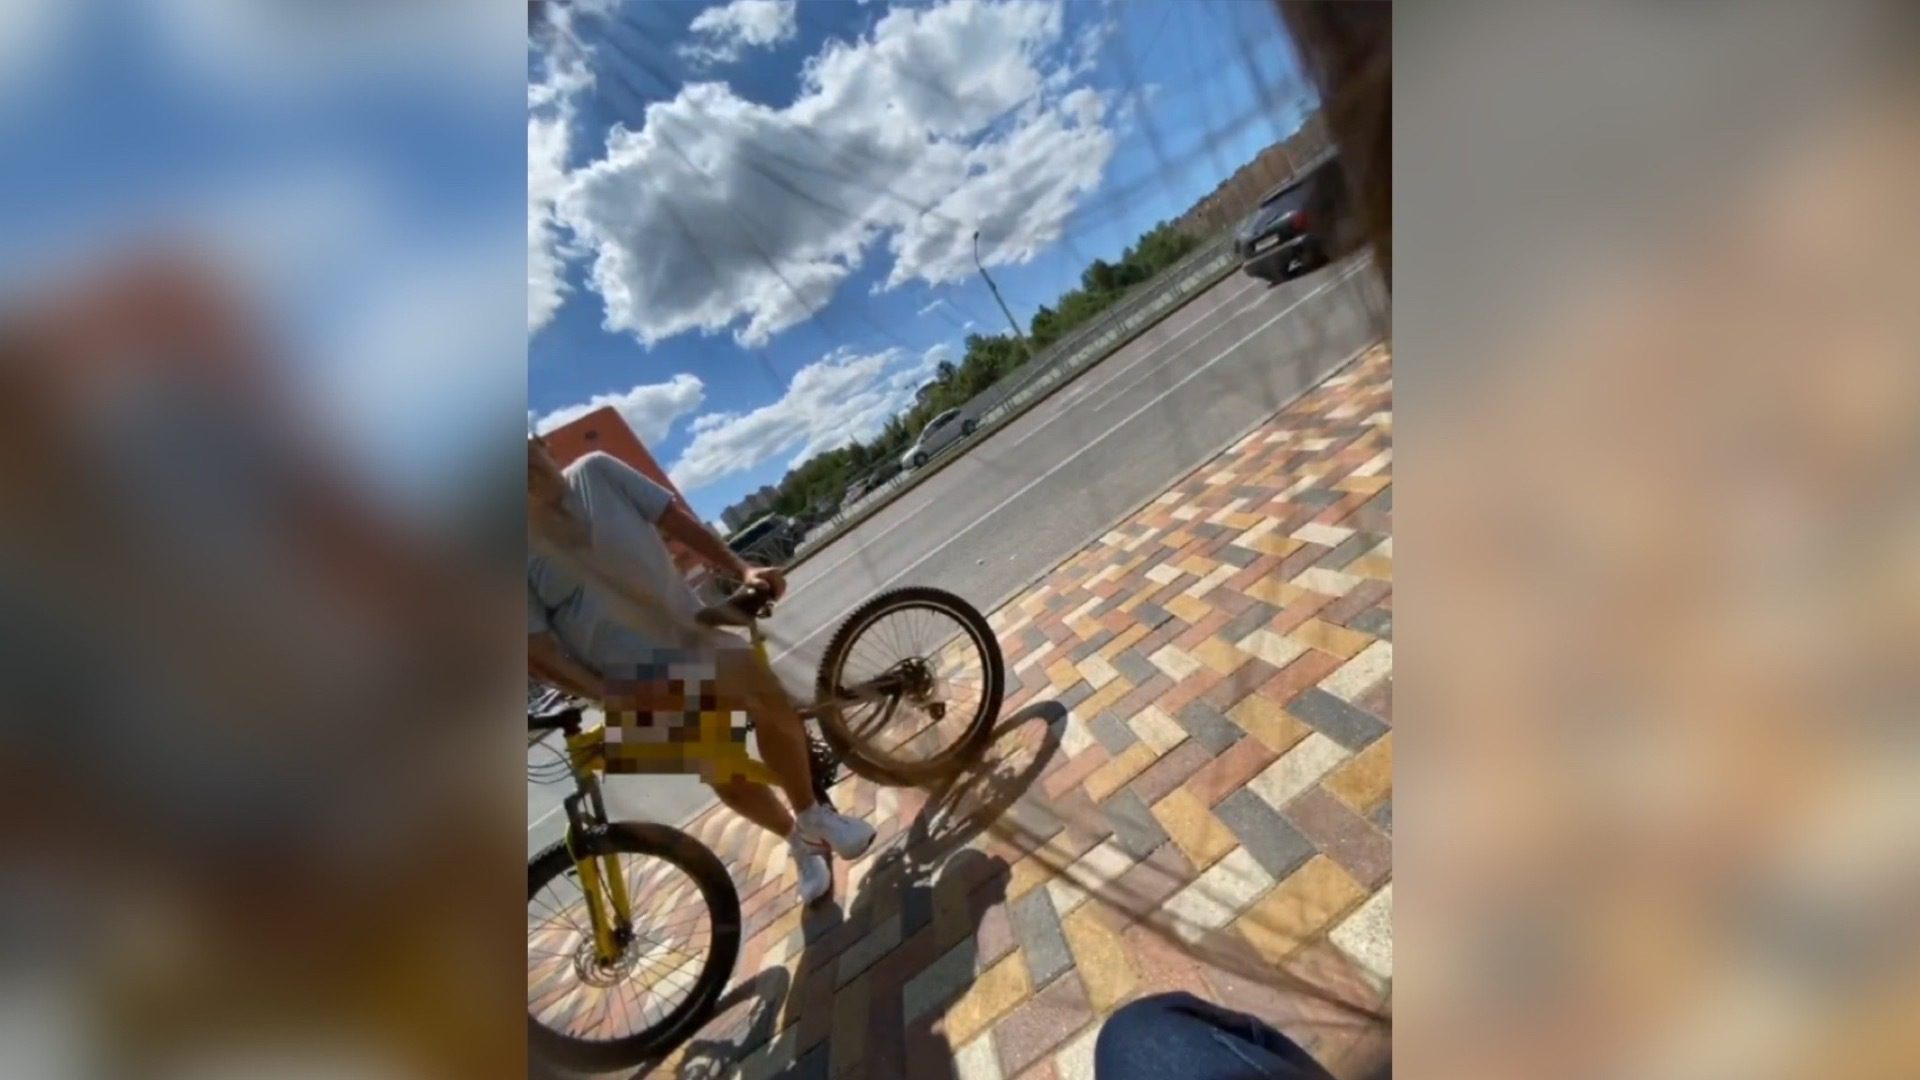 Онаниста на велосипеде заметили около остановки в Ставрополе0